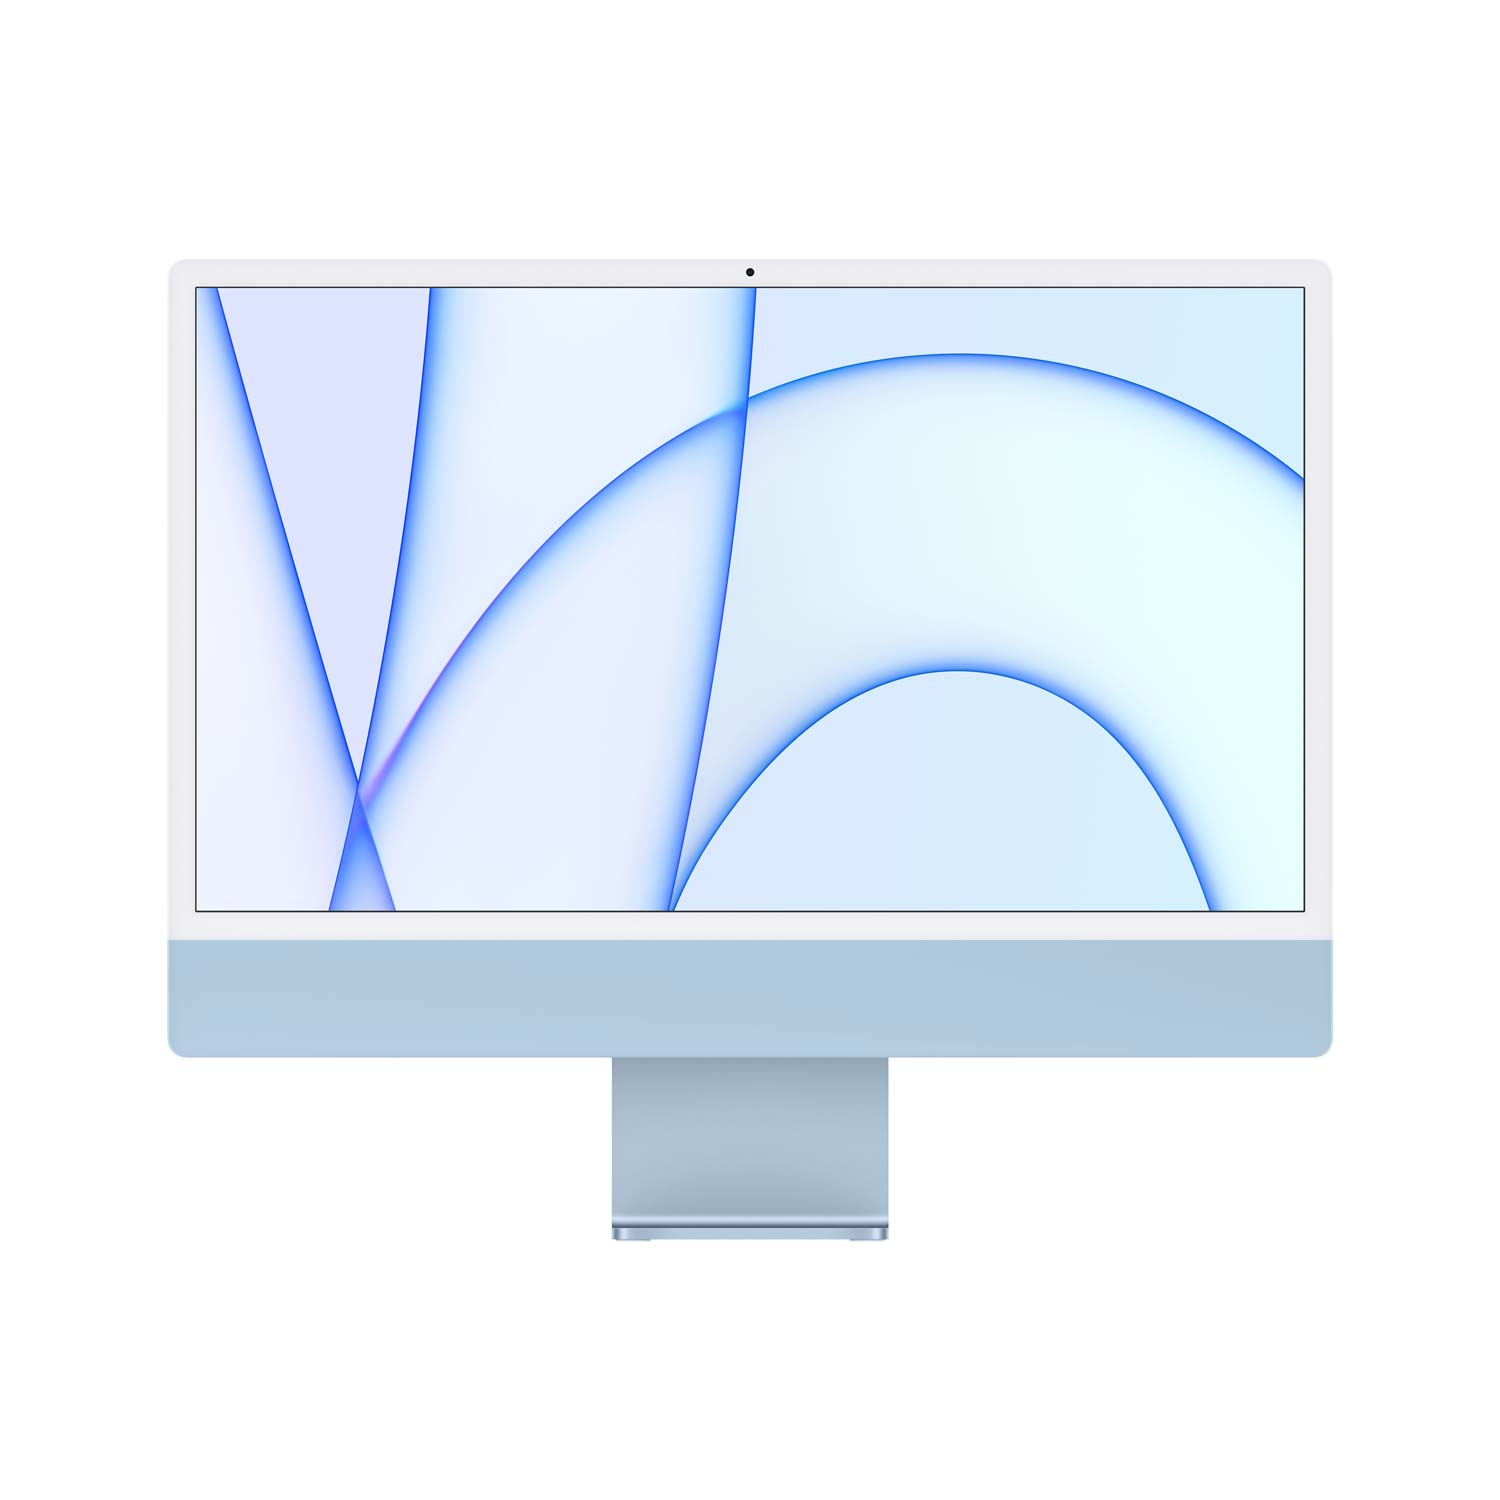 Externe grafikkarte mac thunderbolt - Die preiswertesten Externe grafikkarte mac thunderbolt ausführlich analysiert!